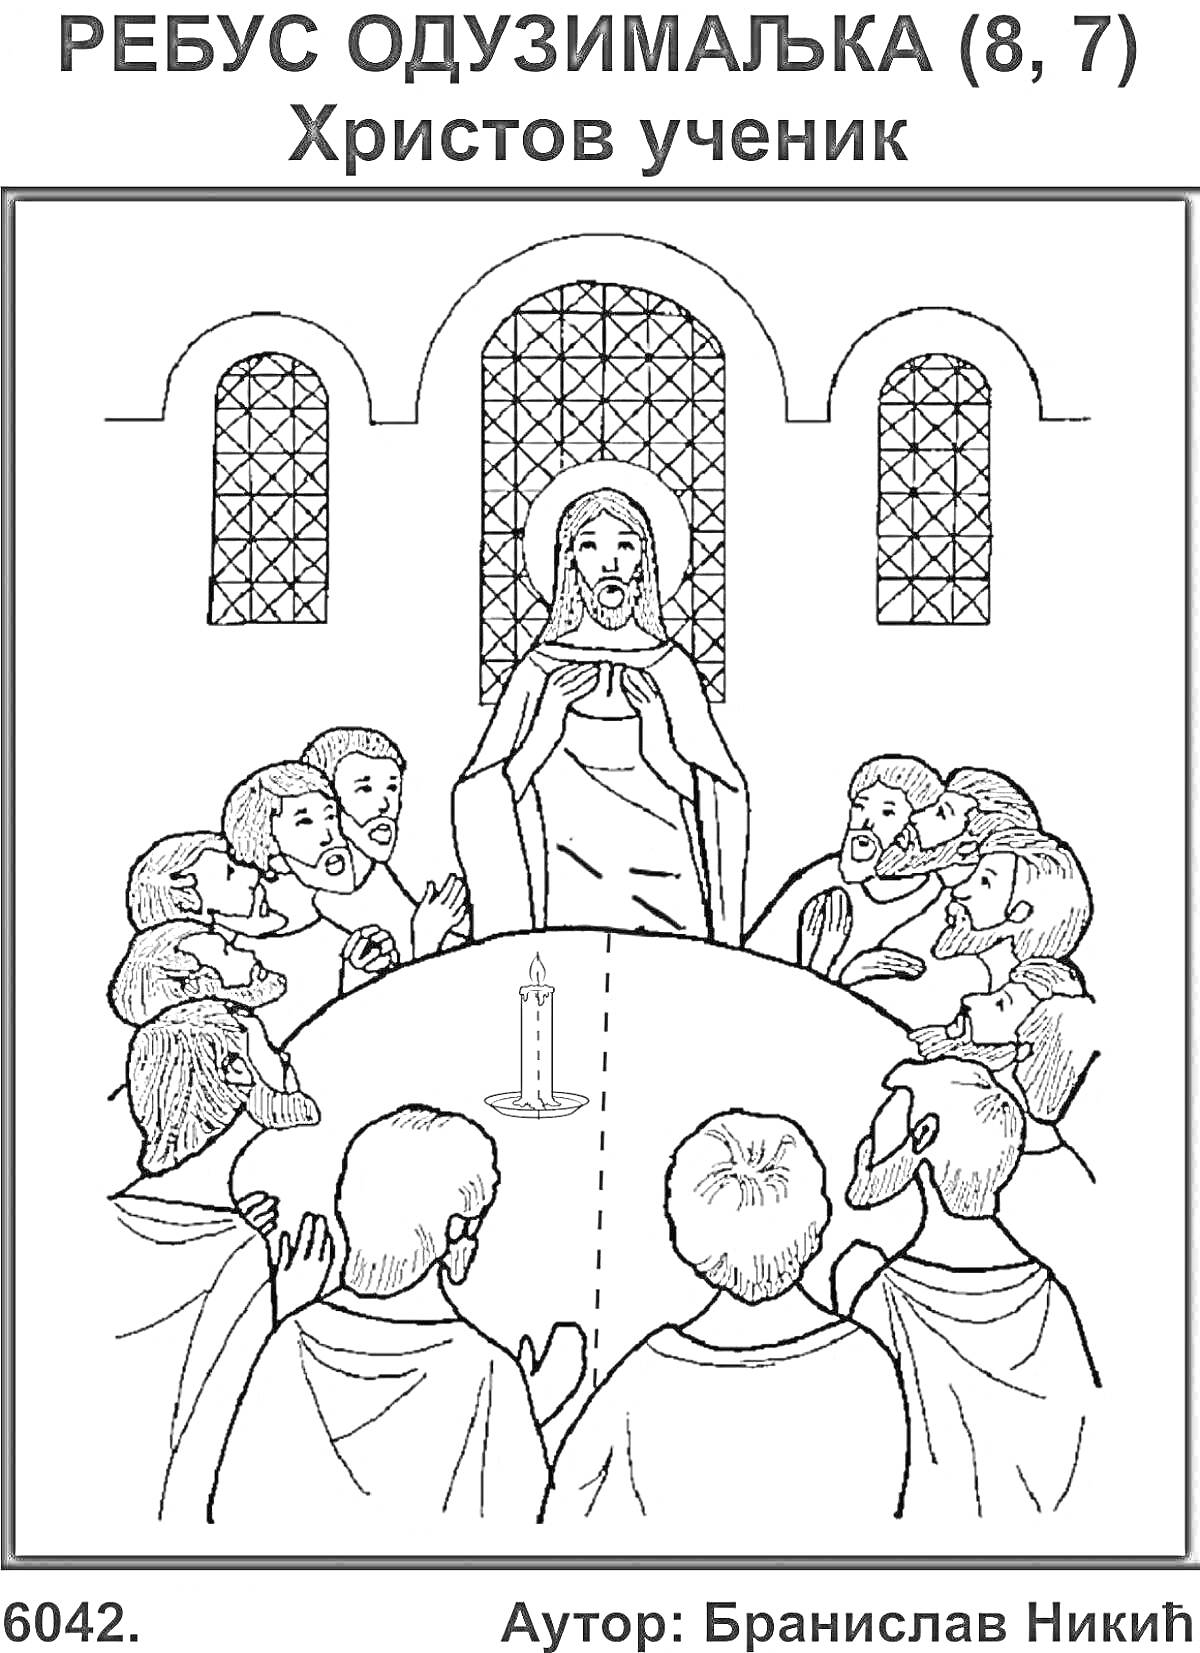 Раскраска Тайная вечеря с учениками Христа, ребус на тему православия.